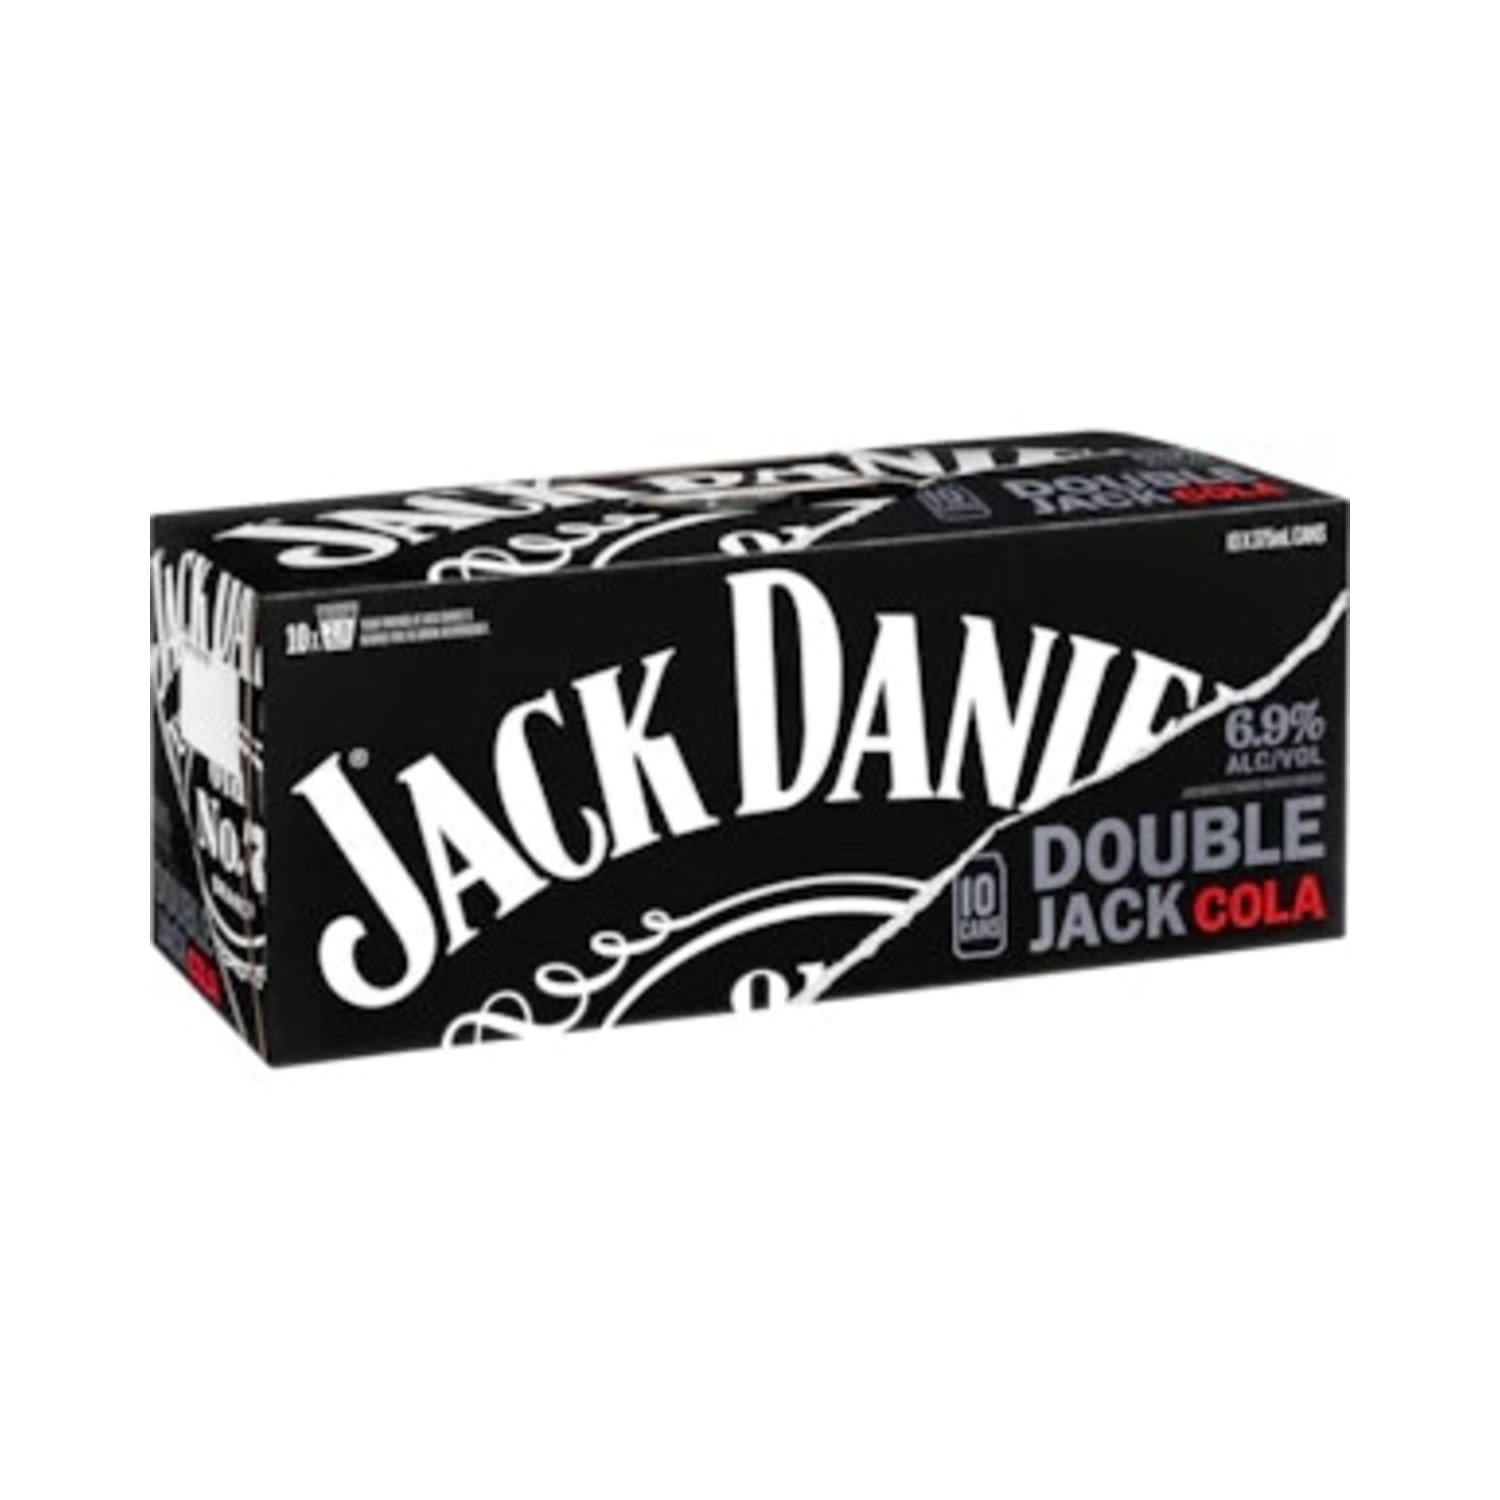 Jack Daniel's Double Jack 375mL<br /> <br />Alcohol Volume: 6.90%<br /><br />Pack Format: 10 Pack<br /><br />Standard Drinks: 2</br /><br />Pack Type: Can<br />